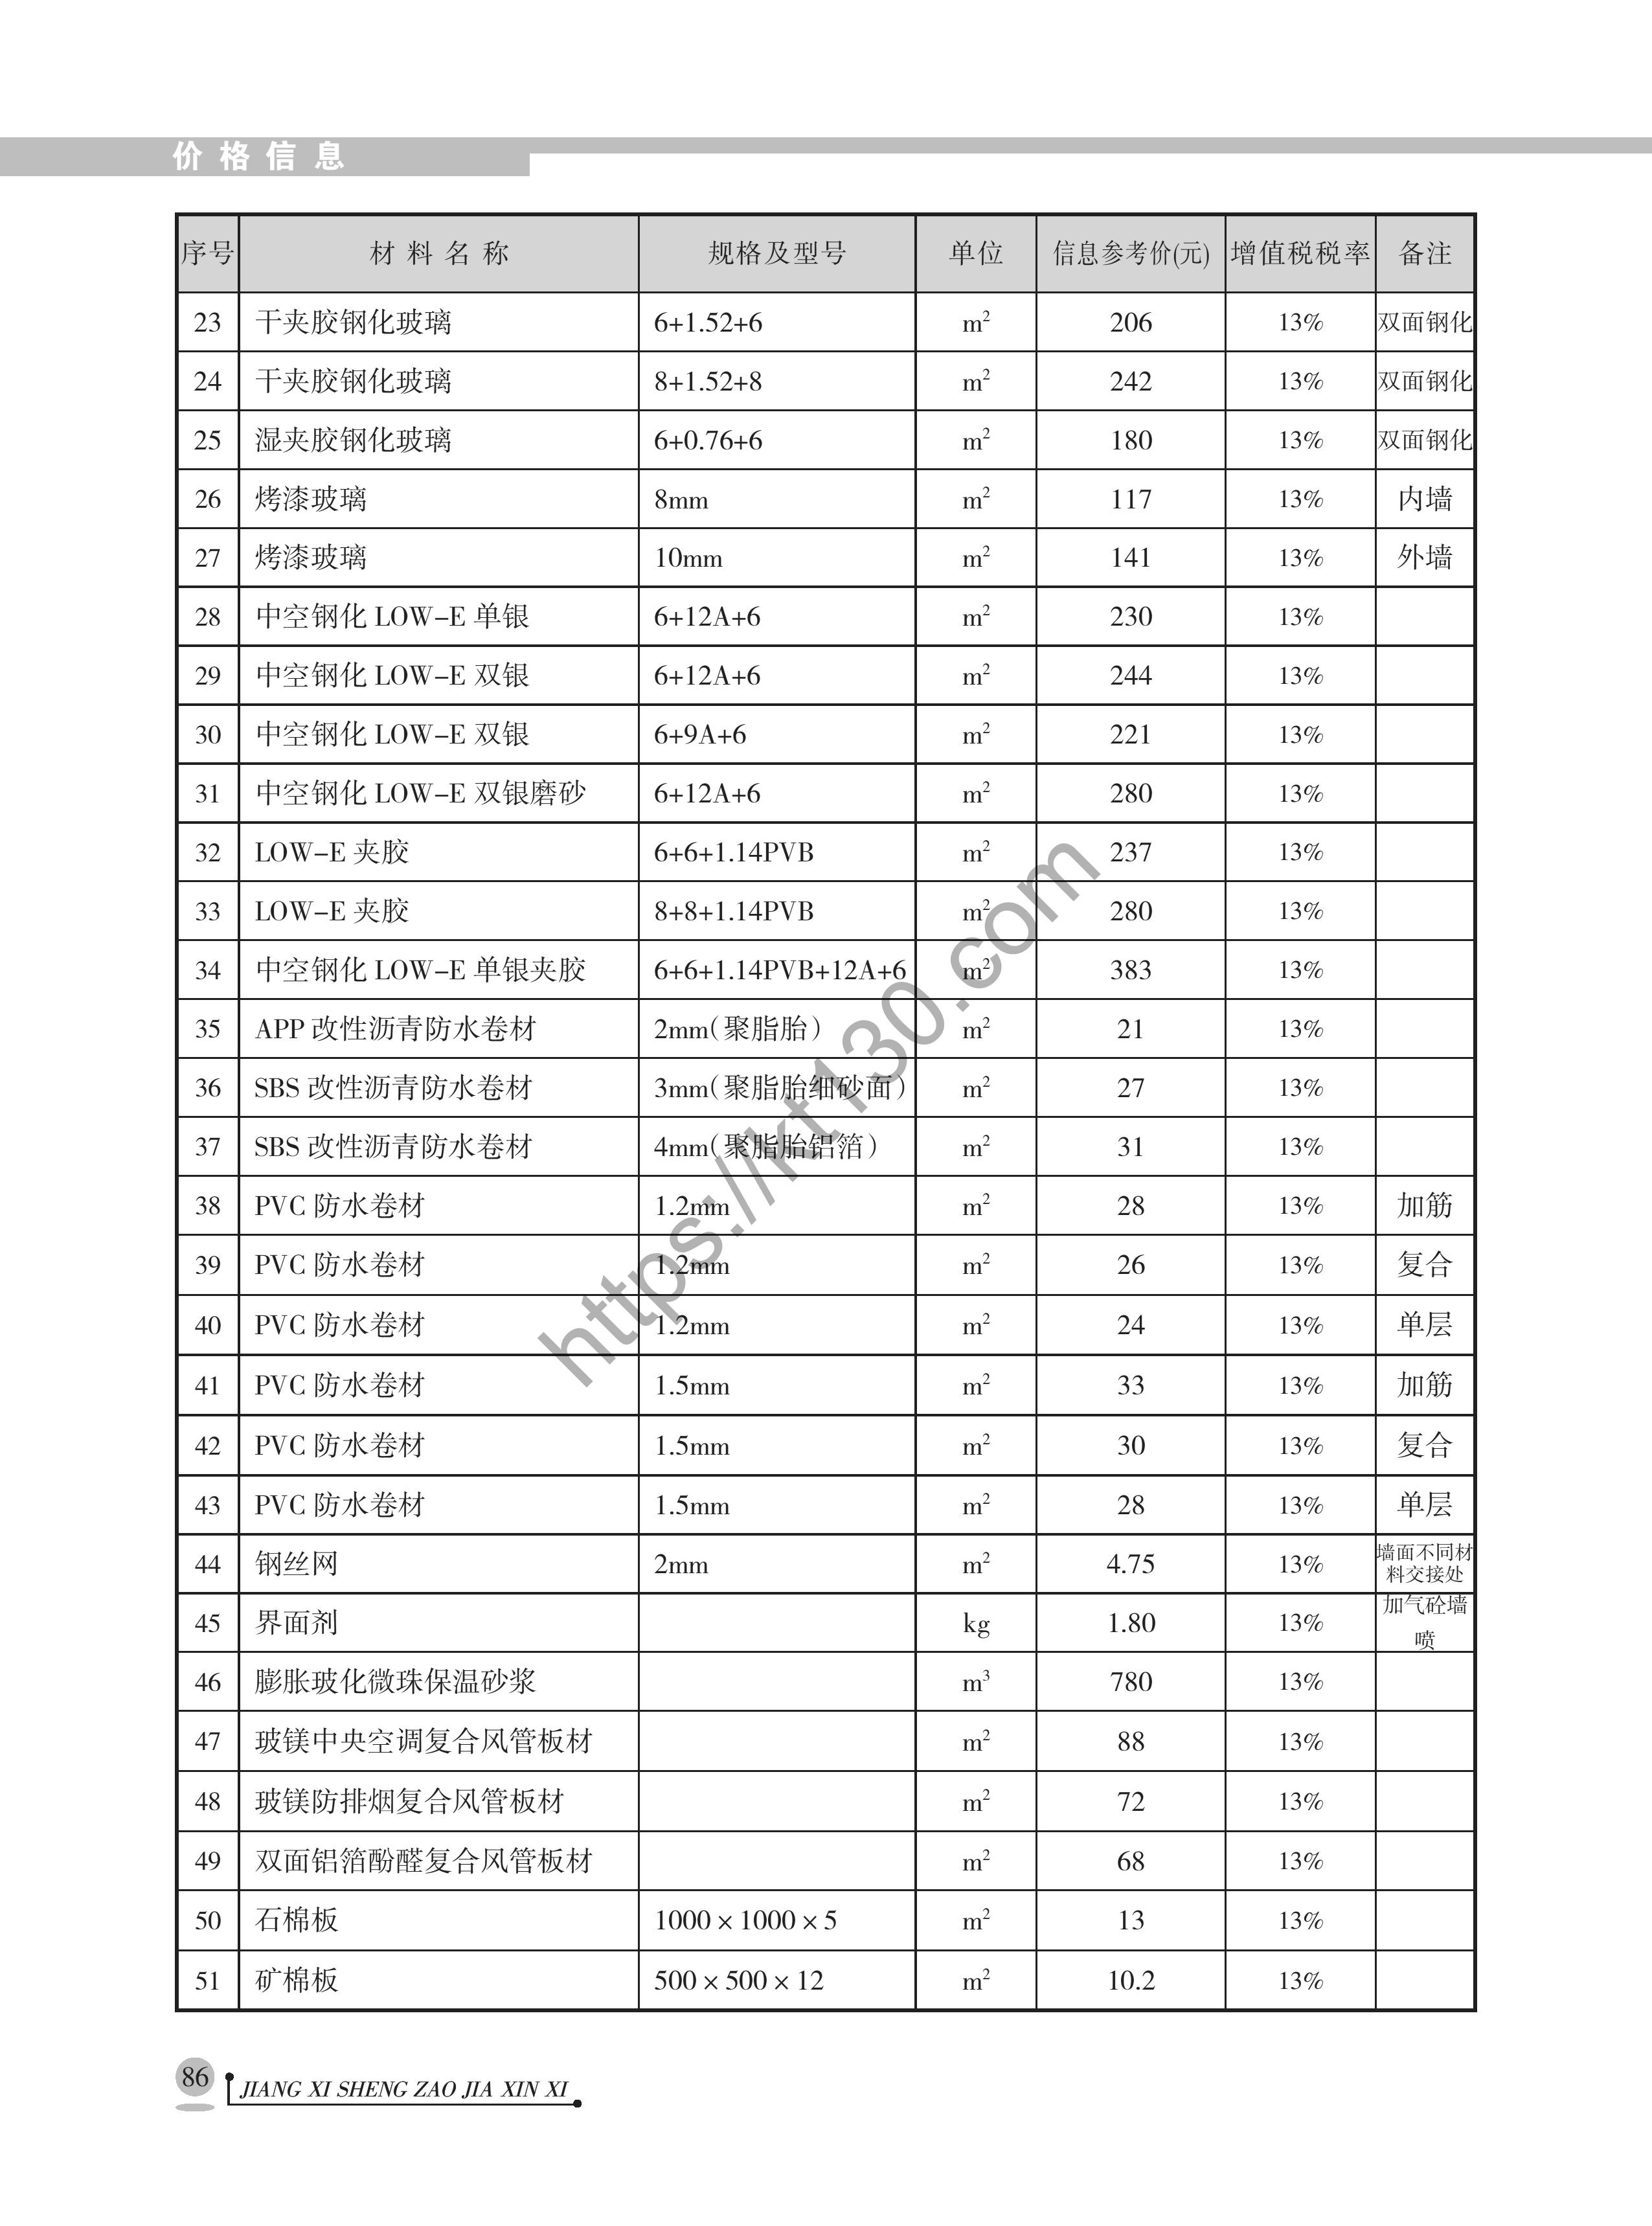 江西省2022年6月建筑材料价_玻璃_40748